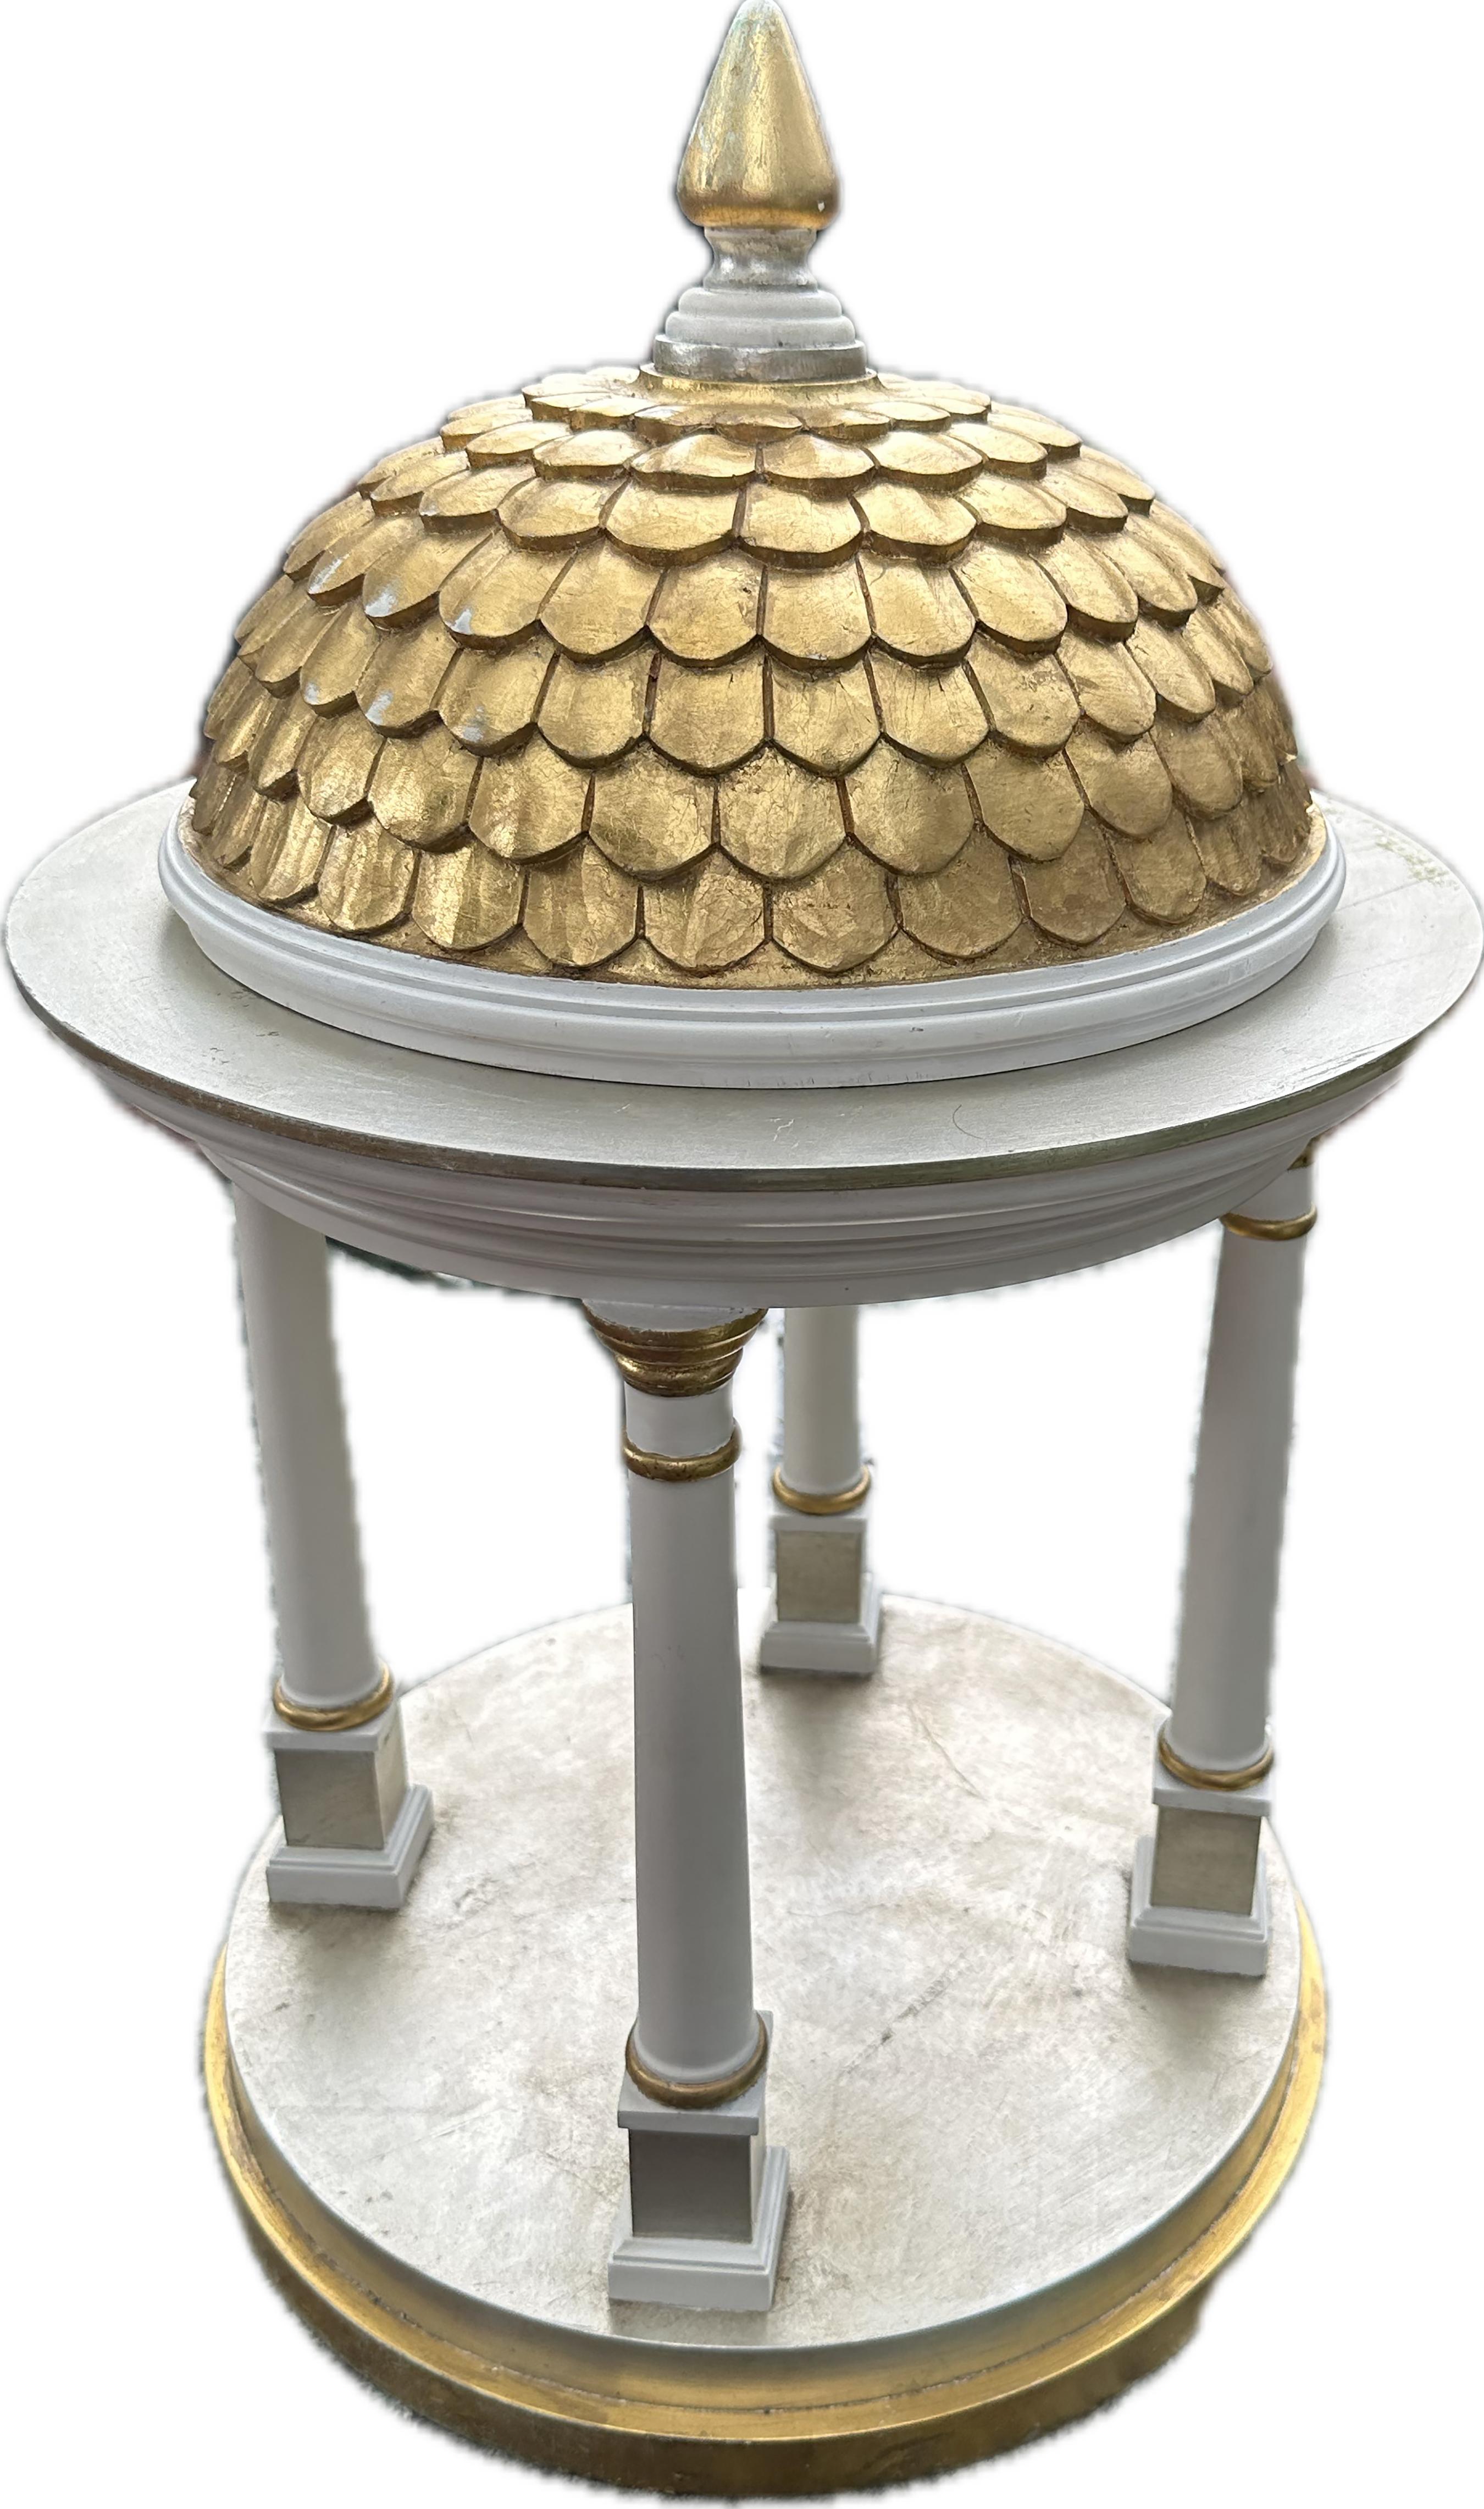 Ein elegantes Pavillonmodell im Tempietto-Stil mit einer vergoldeten romanischen Kachelkuppel. Weiß gestrichene Holzstruktur. Gestützt von vier Säulen mit vergoldeten Verzierungen und akzentuiert durch ein Finale. Der runde Sockel ist ebenfalls mit